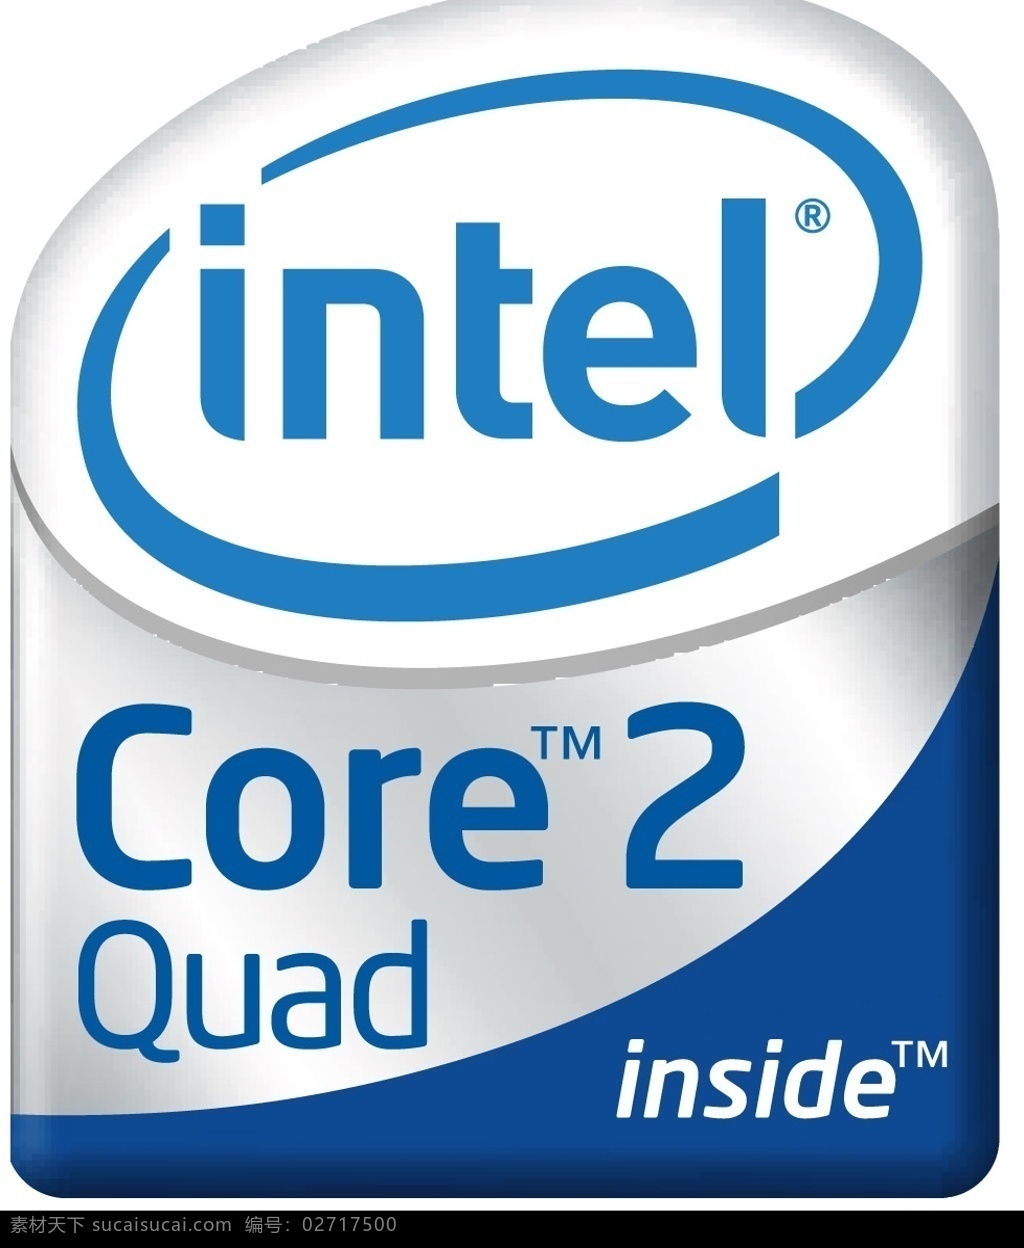 英特尔 酷睿2 四核 intel inside core2 quad 标识标志图标 企业 logo 标志 英特尔标识 矢量图库